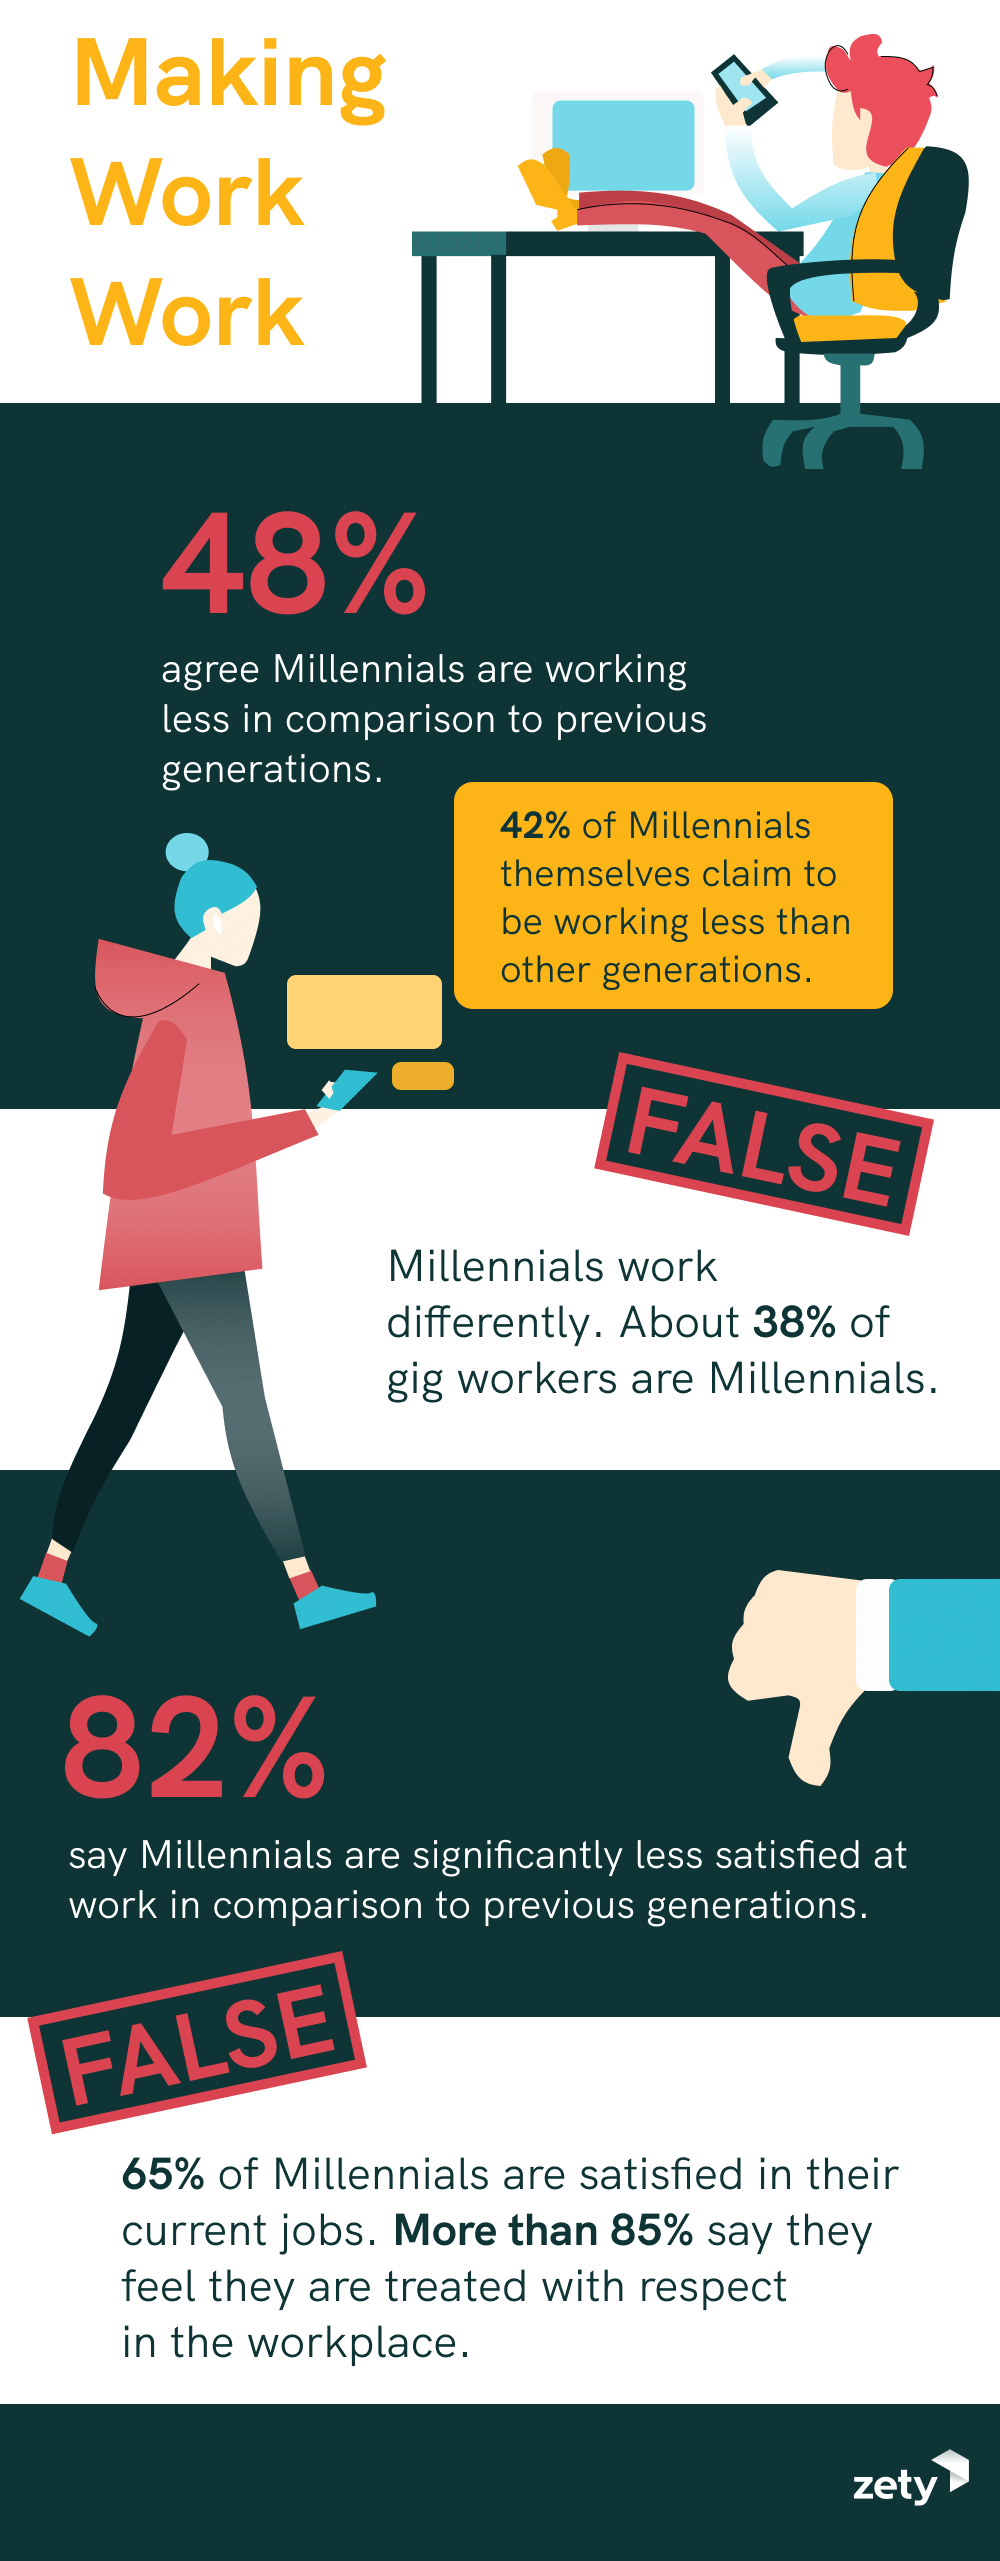 millennials are killing it